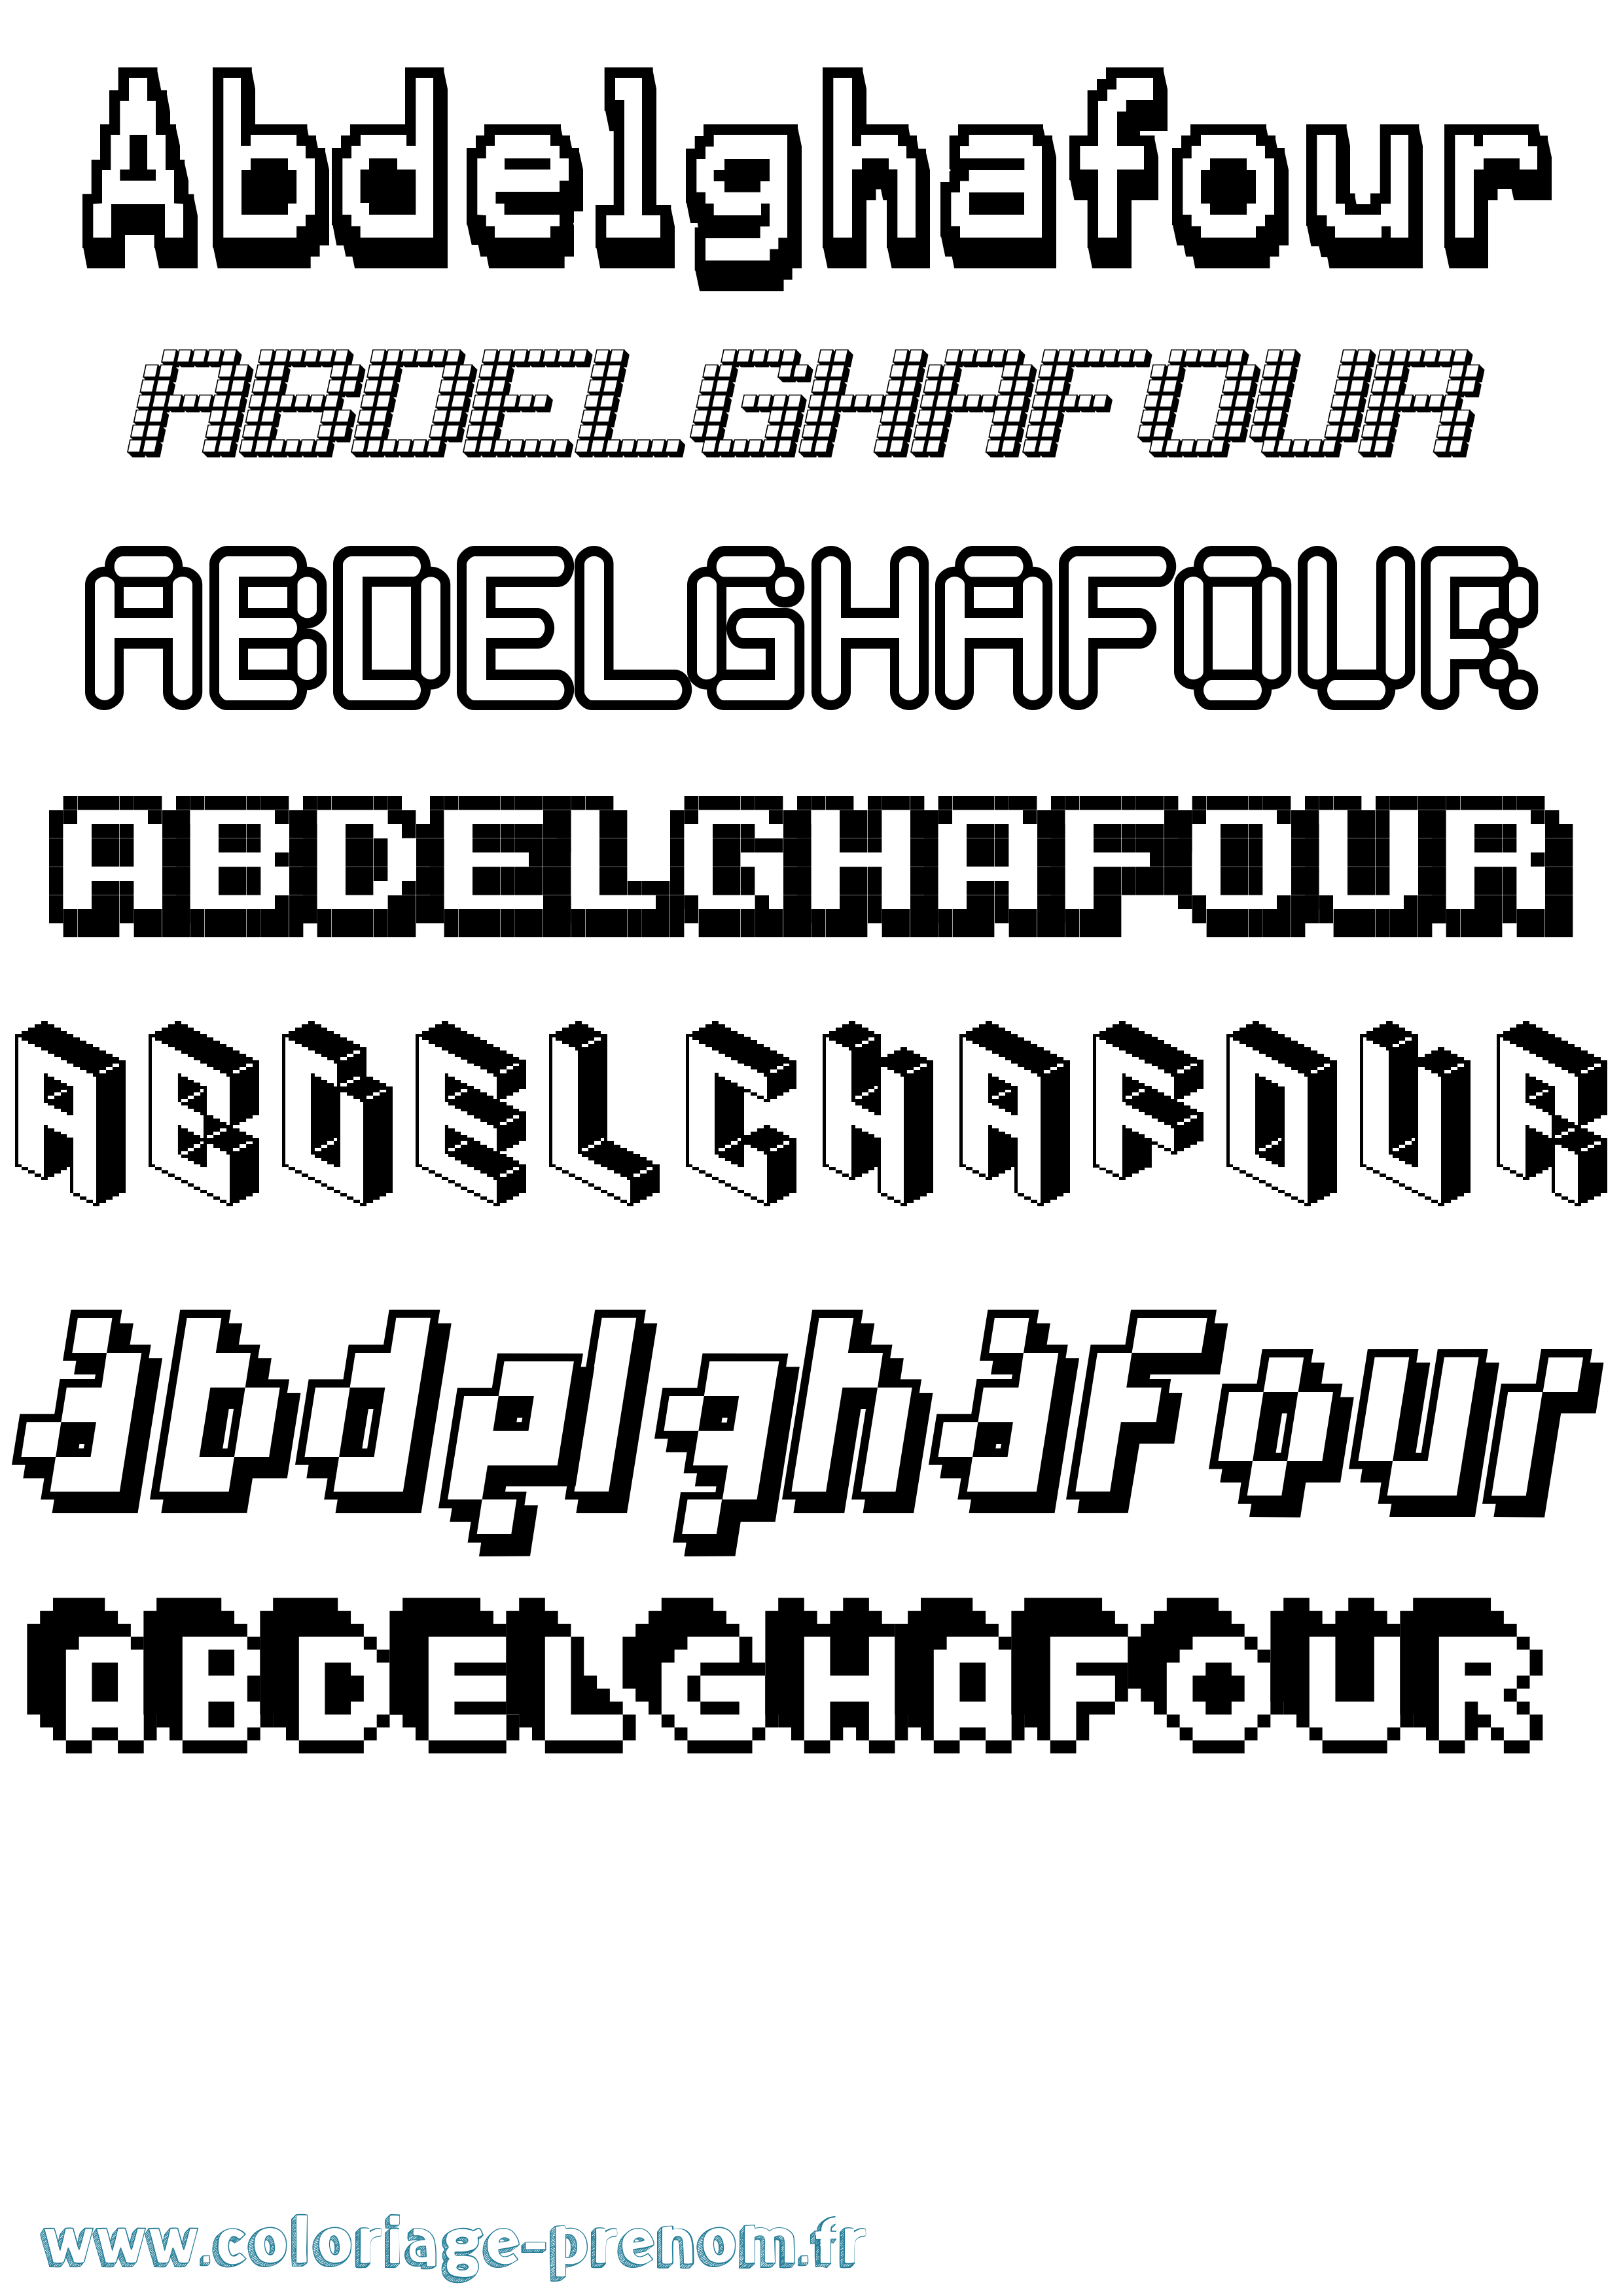 Coloriage prénom Abdelghafour Pixel